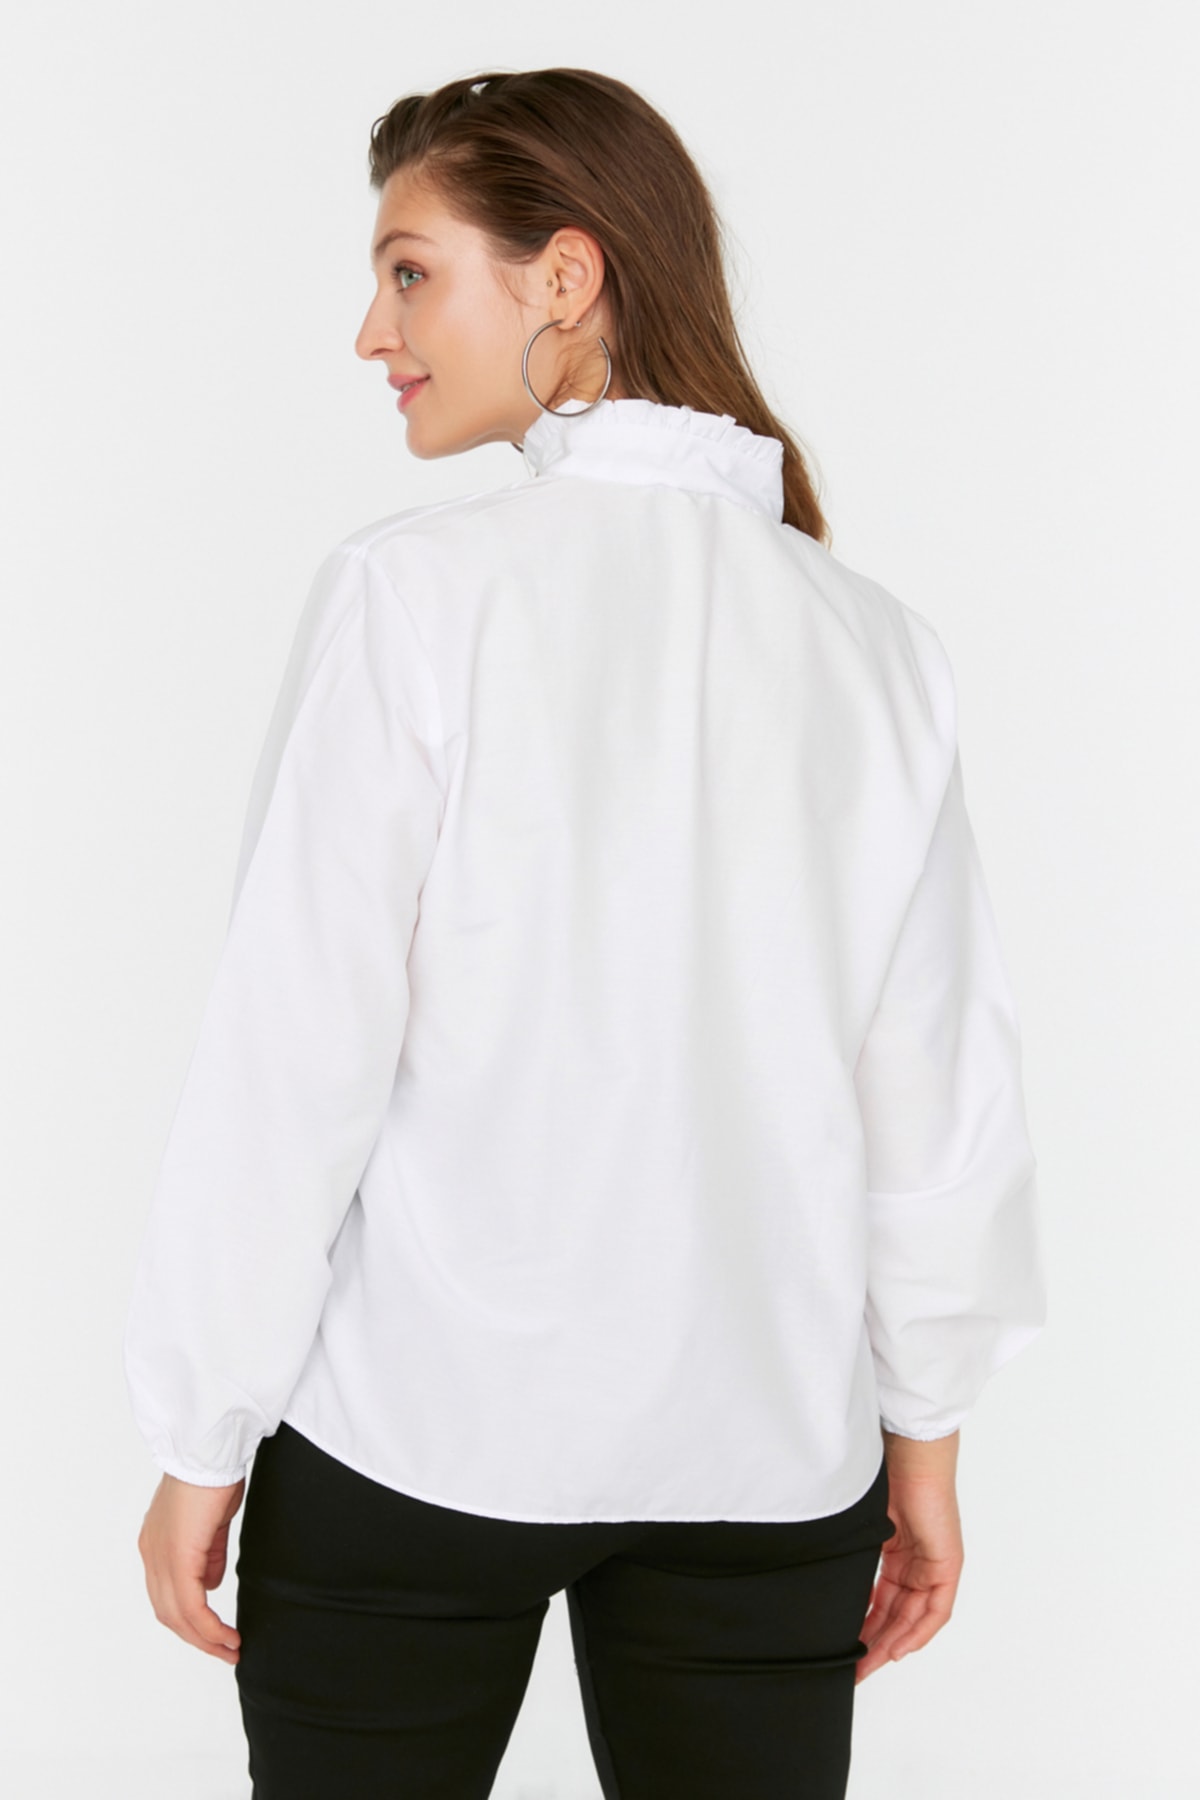 Trendyol Curve Große Größen in Bluse Weiß Regular Fit Fast ausverkauft